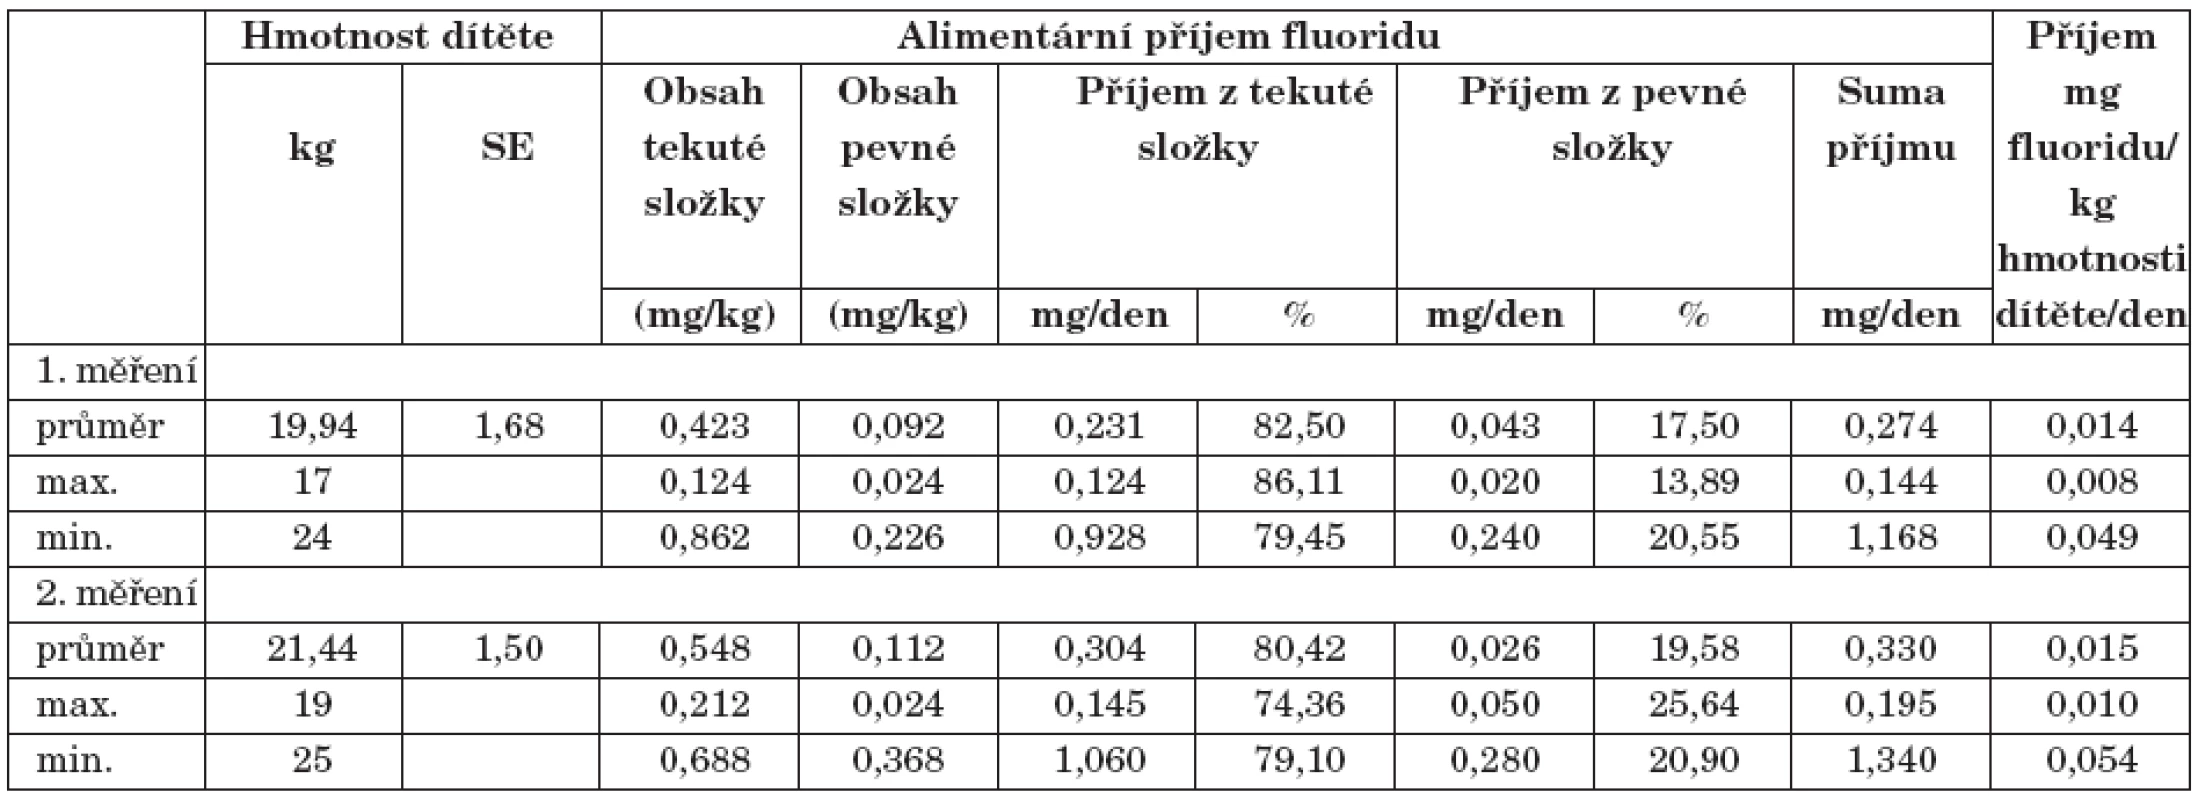 Celkový a přepočítaný cirkadiální příjem fluoridu